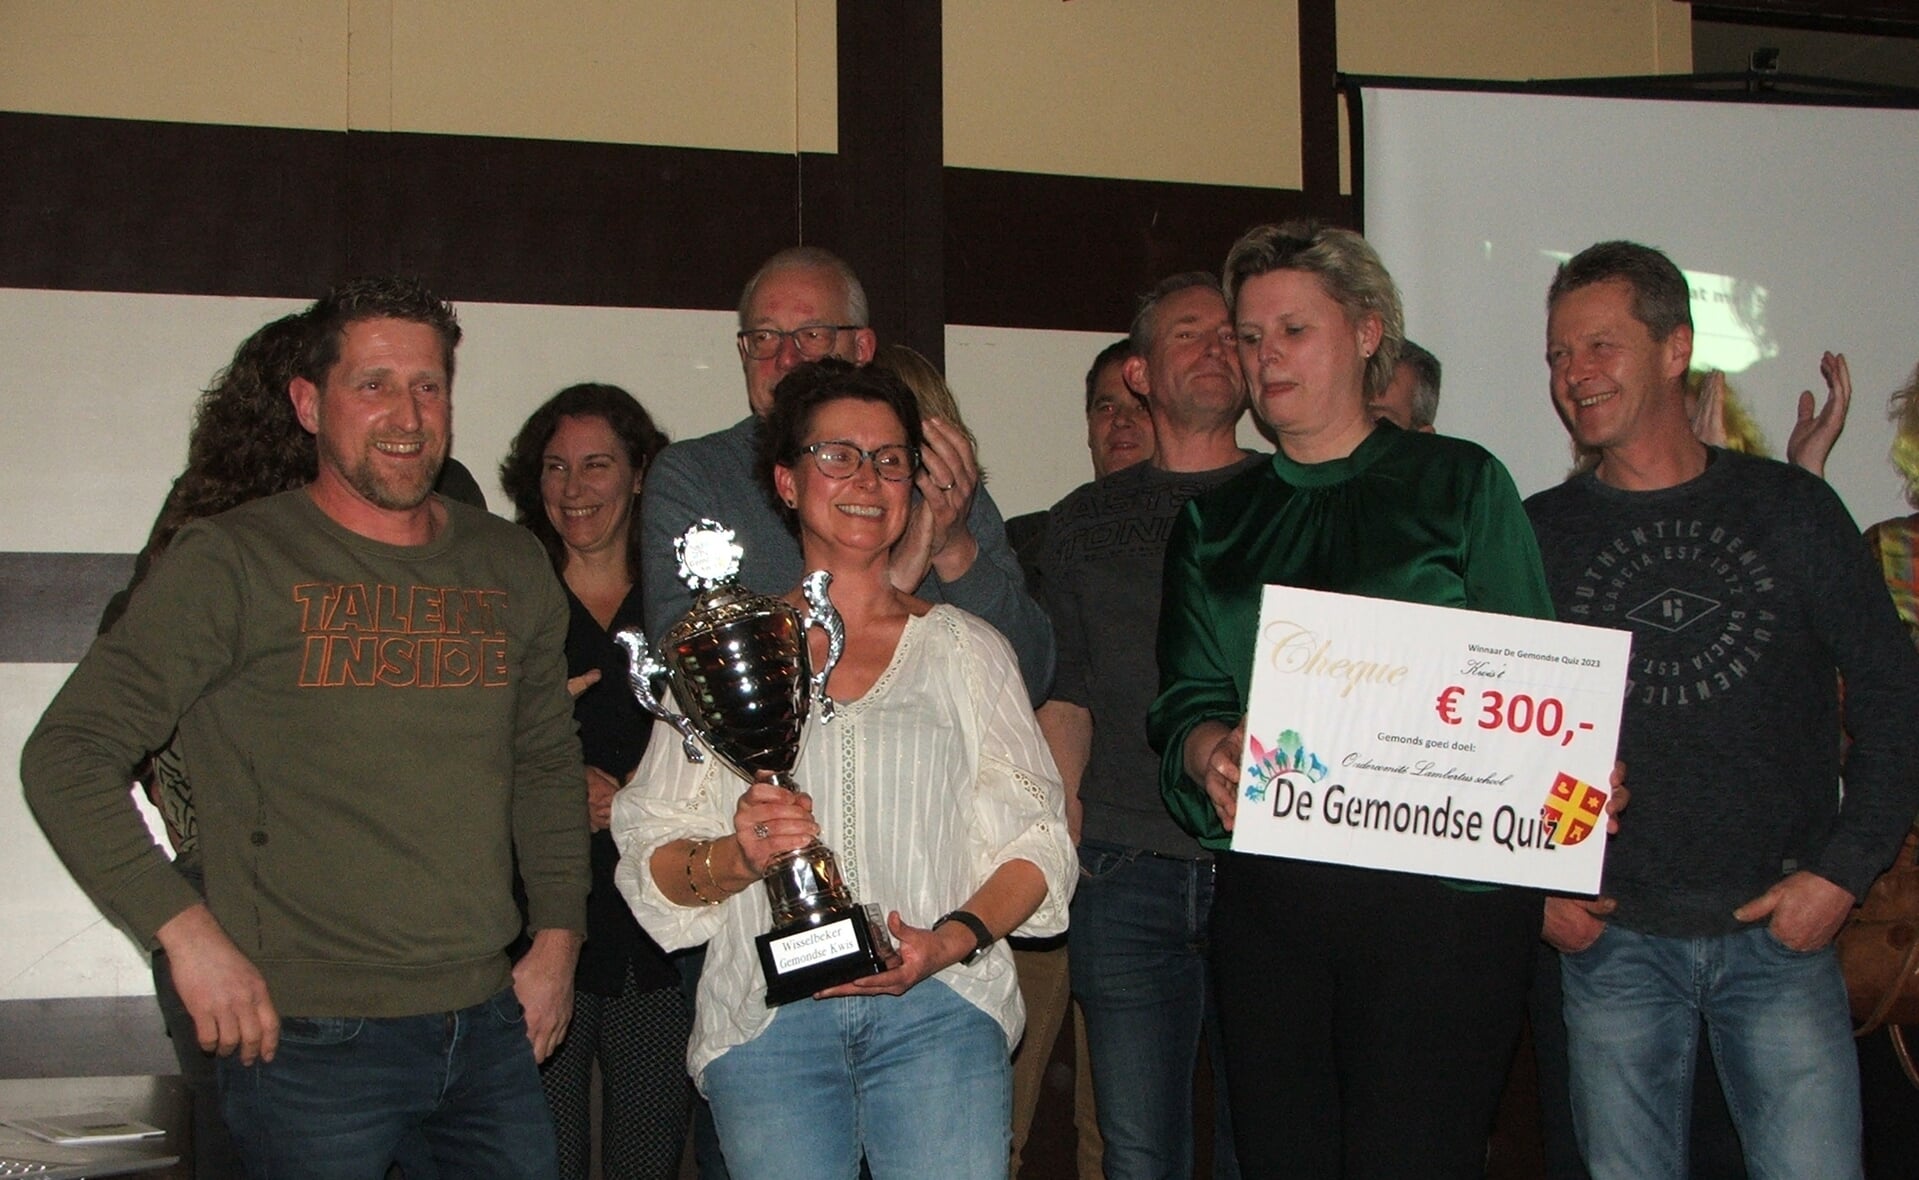 Het team Kwis 't won de Gemondse Quiz en schonk zijn geldprijs aan het oudercomité van de Sint-Lambertusschool.